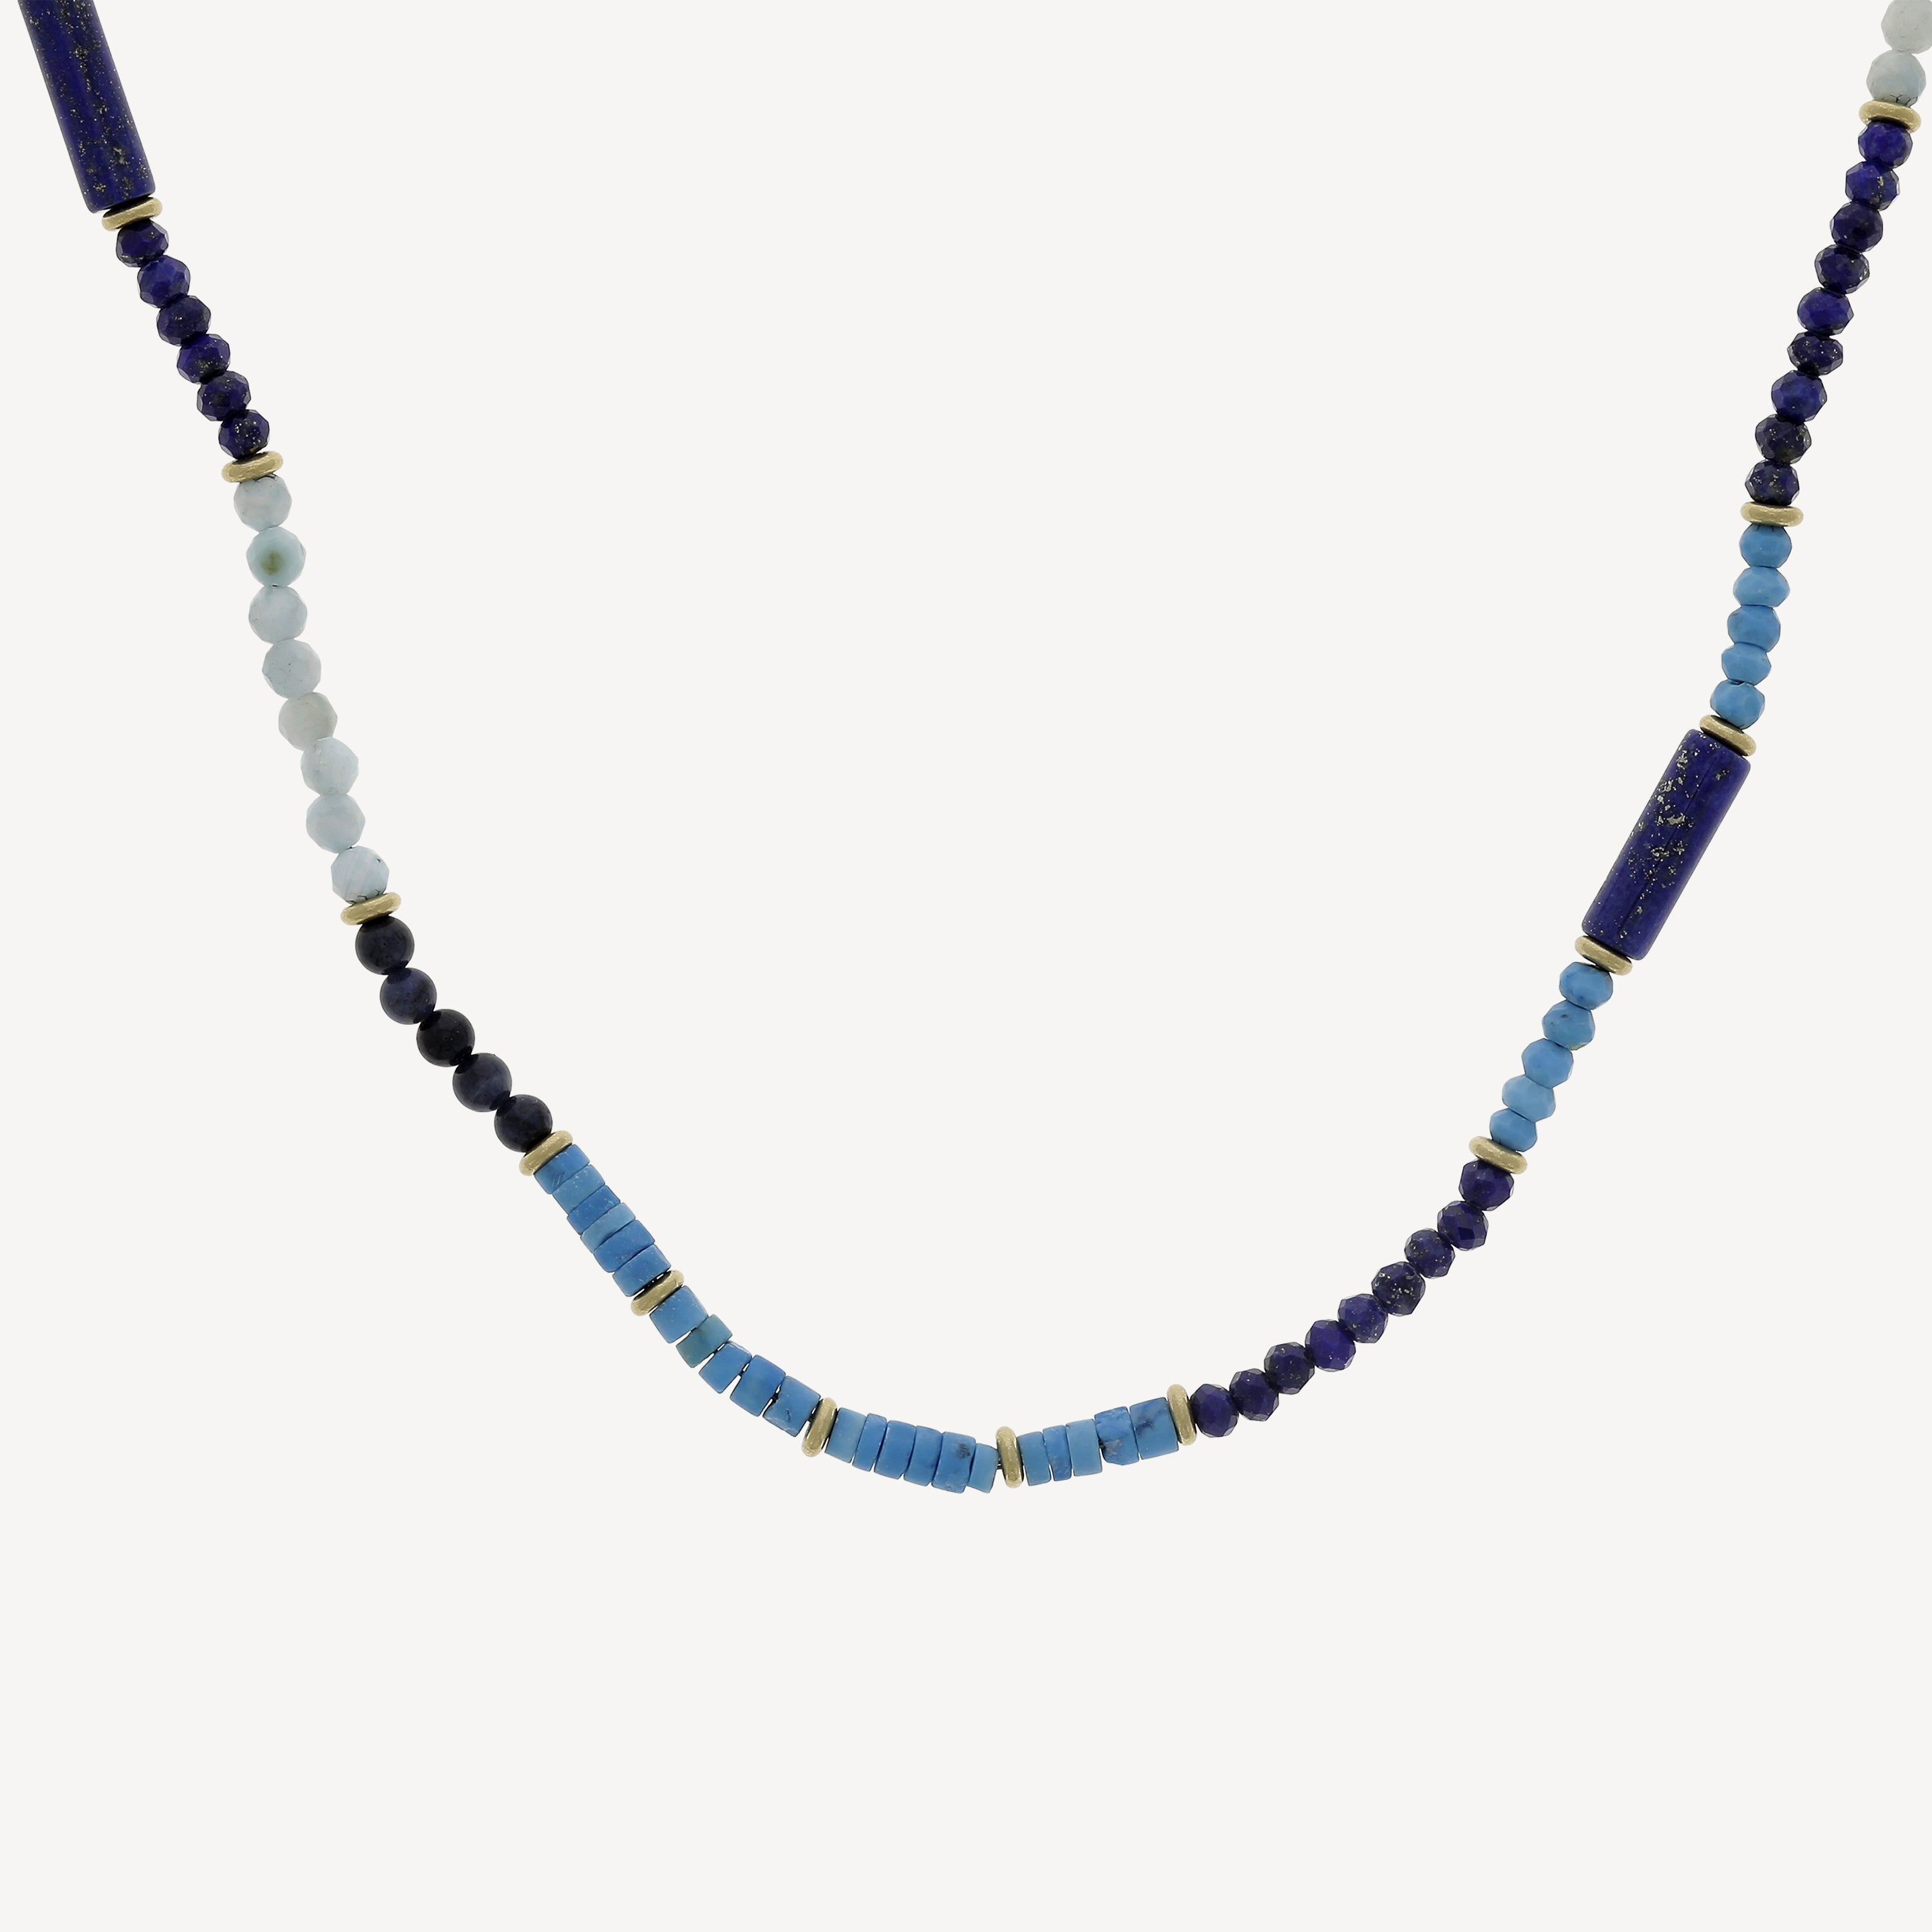 Halskette aus hellem Türkis und Lapislazuli